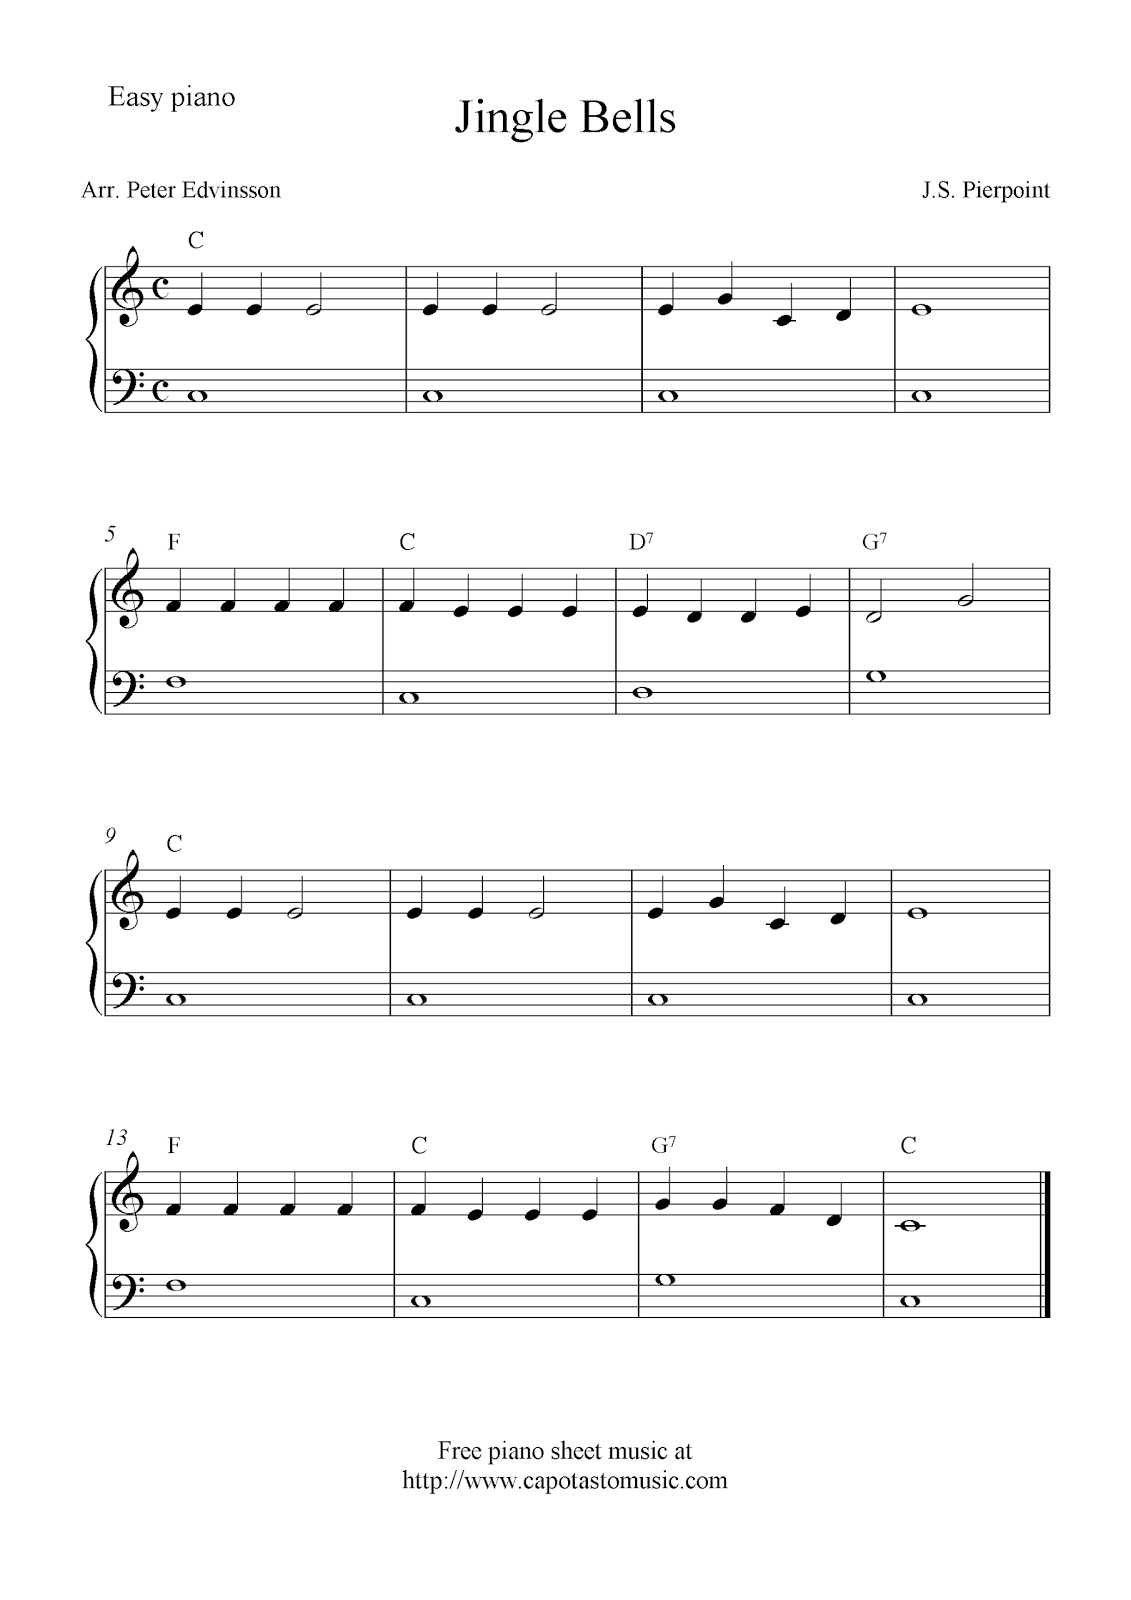 Pinmindy On Music - Christmas | Christmas Piano Sheet Music - Free Christmas Sheet Music For Keyboard Printable